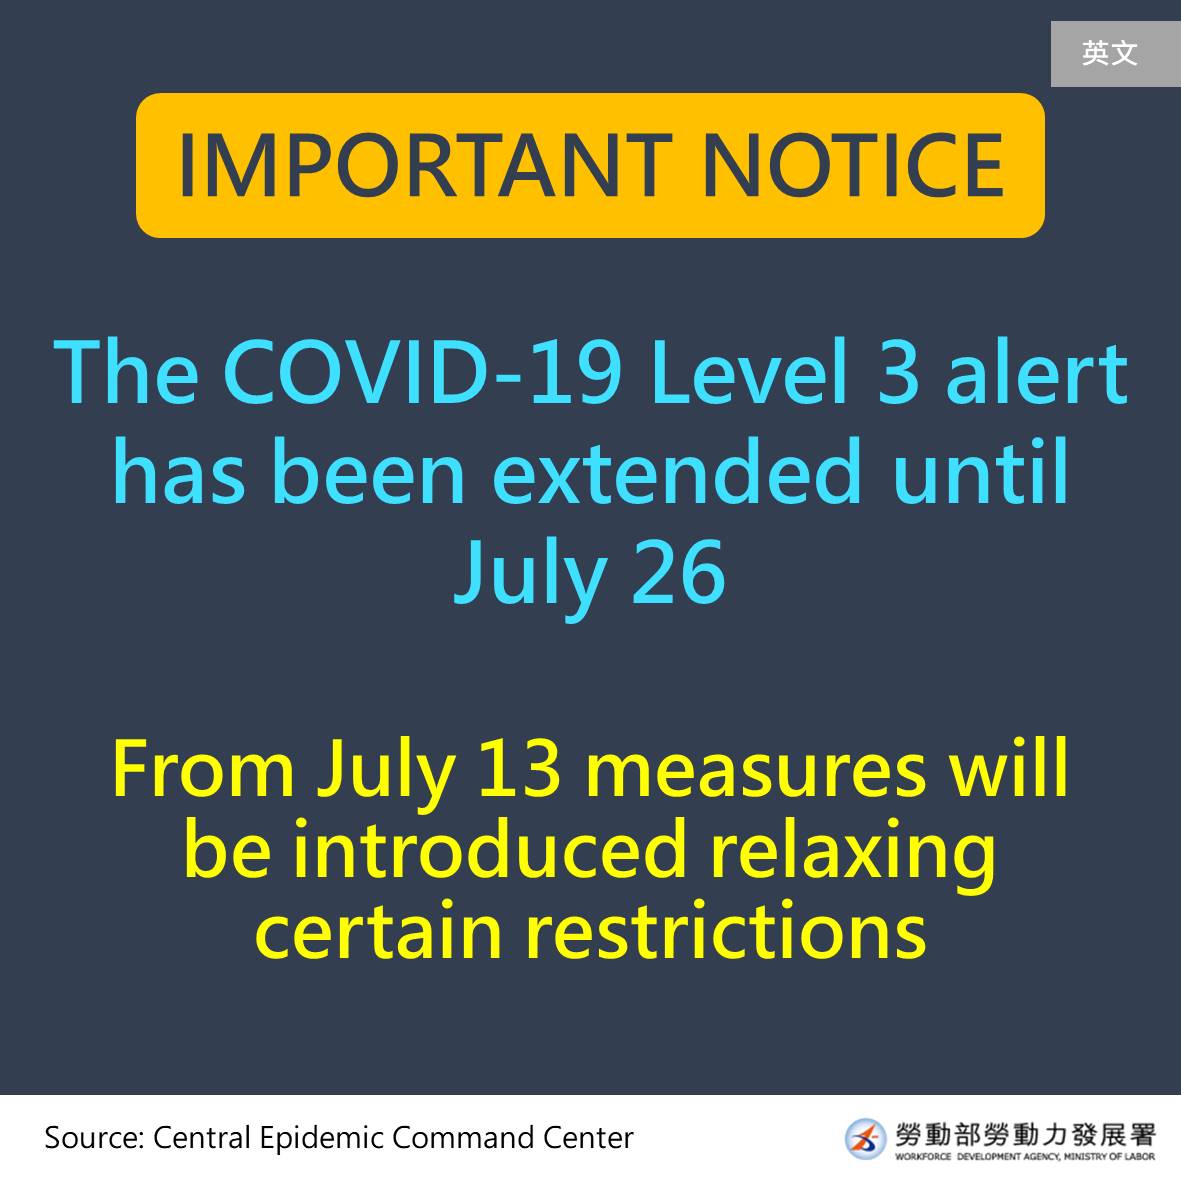 重要公告三級警戒延長至7月26日-英文.jpg